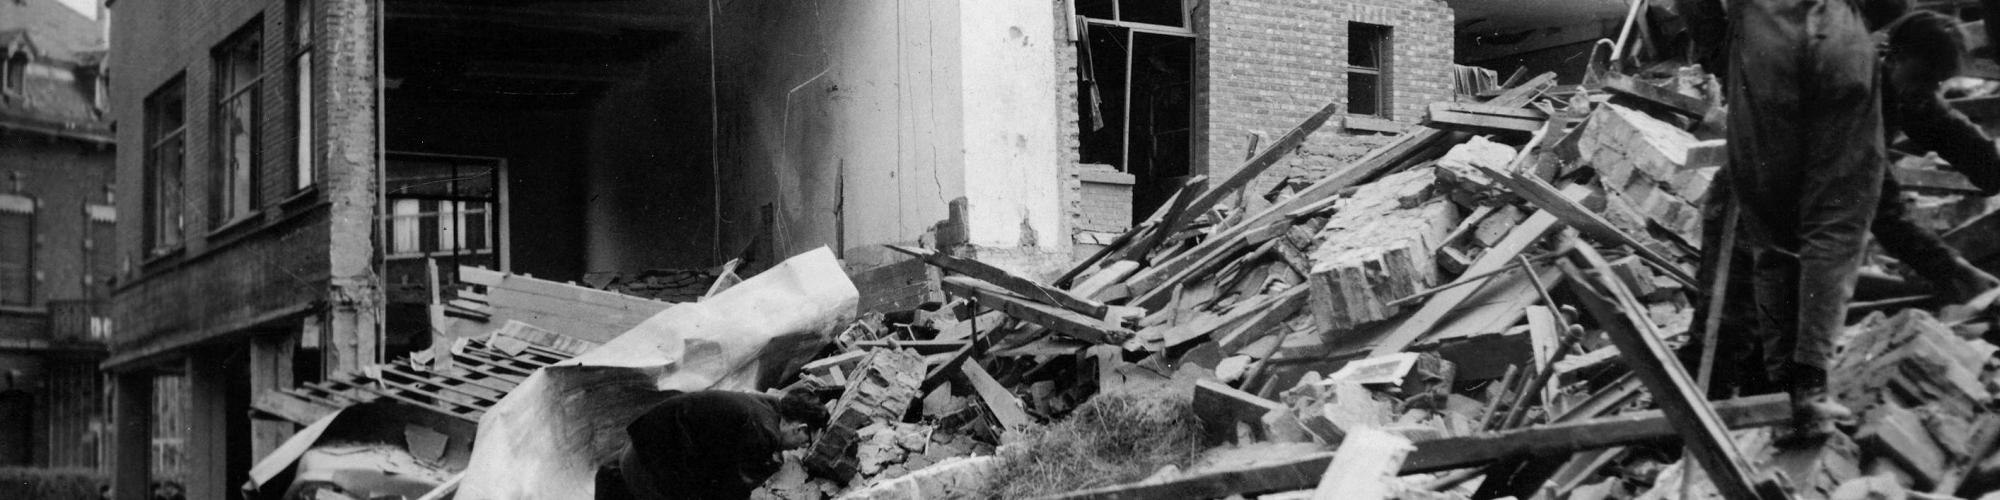 Un bombardement en avril 1944 fait un ravage à Hasselt, photo n°26962 © CegeSoma/Archives de l'Etat